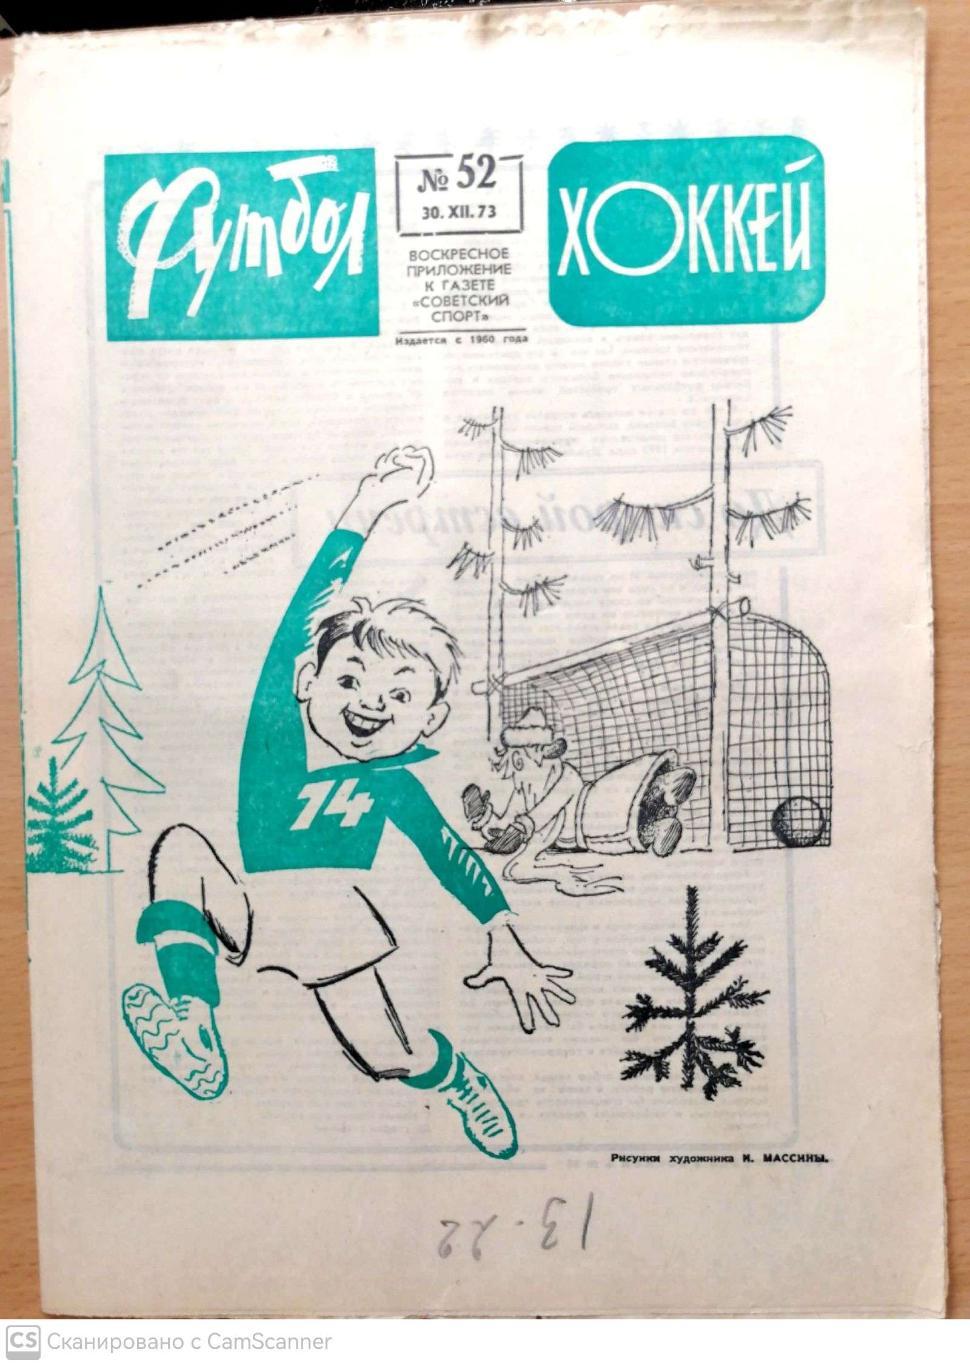 Еженедельник «Футбол-Хоккей». 1973 год. №52 блохин